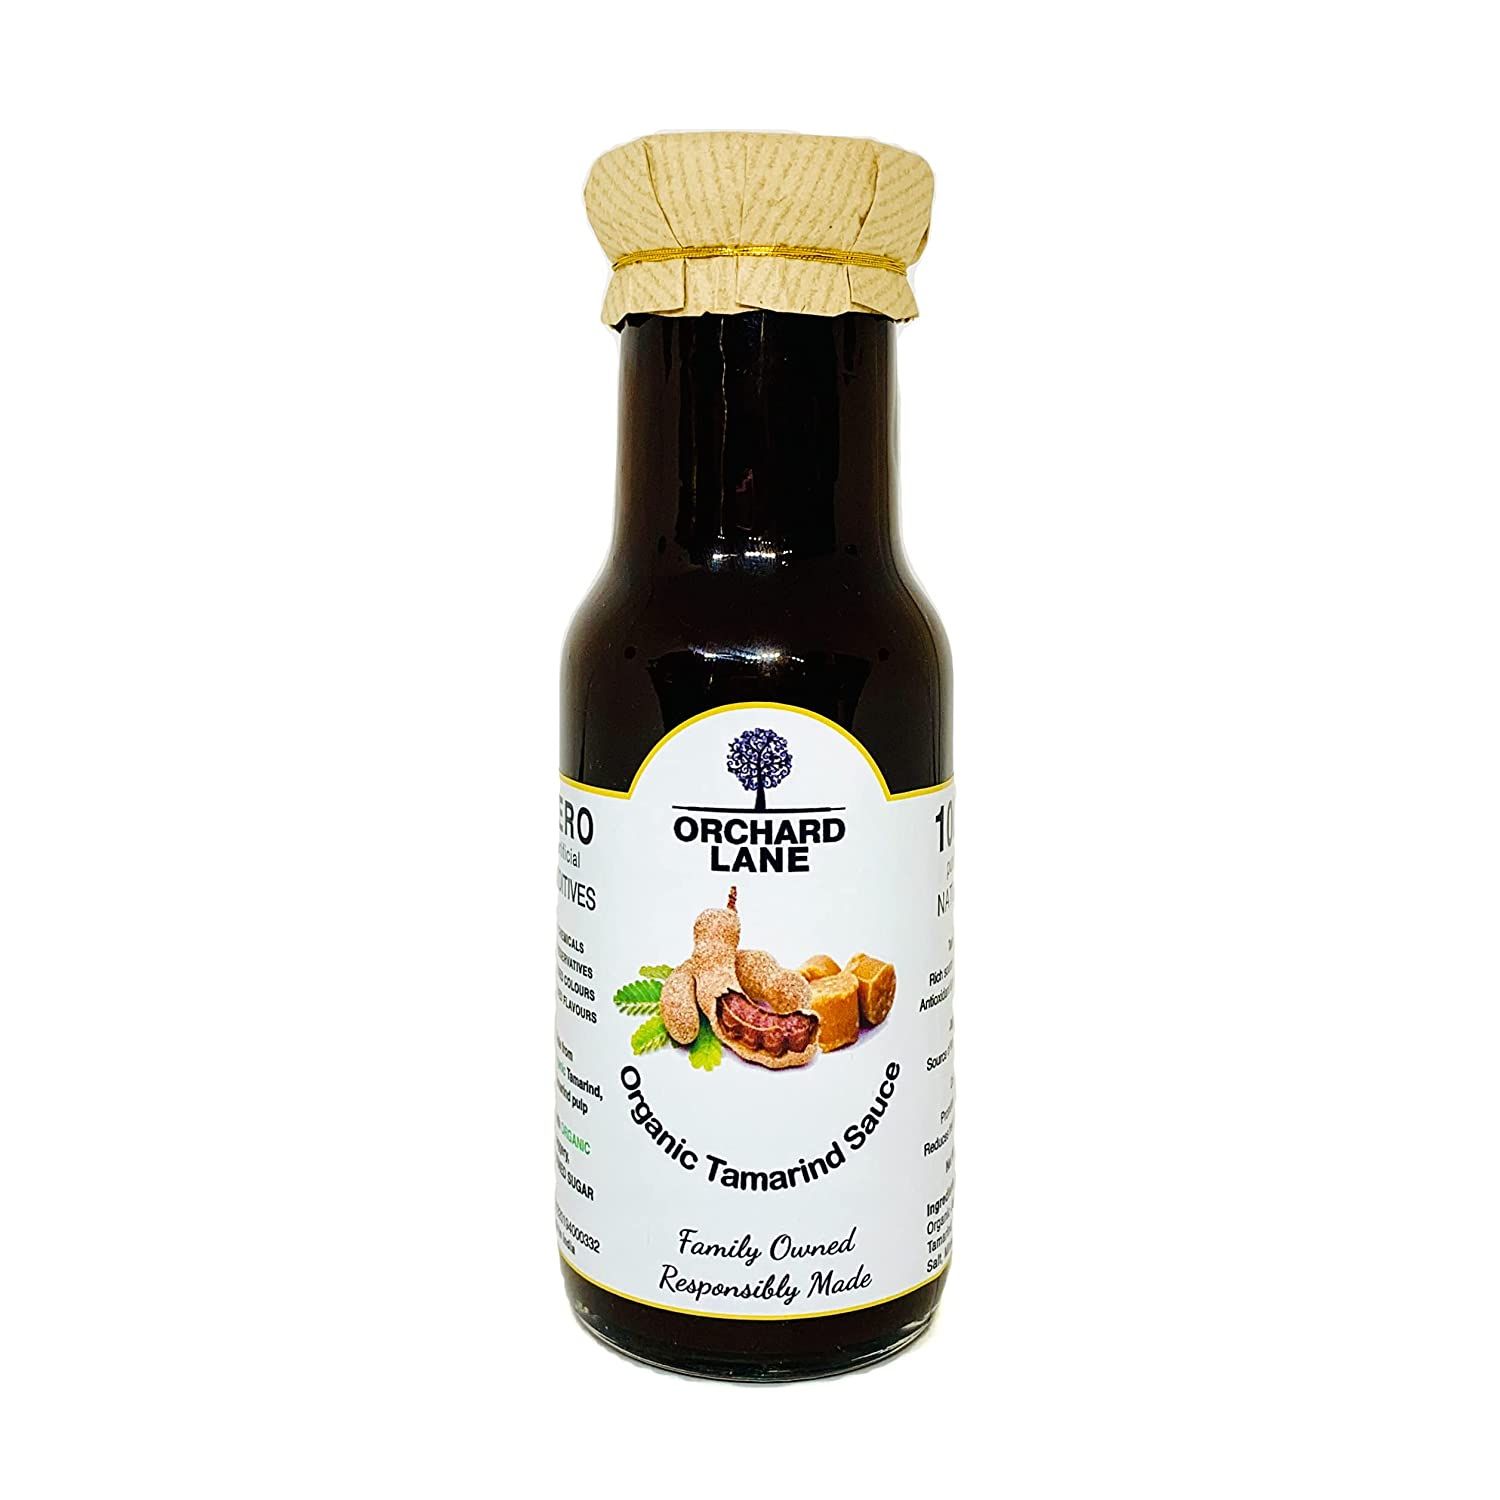 Orchard Lane Tamarind Sauce Image